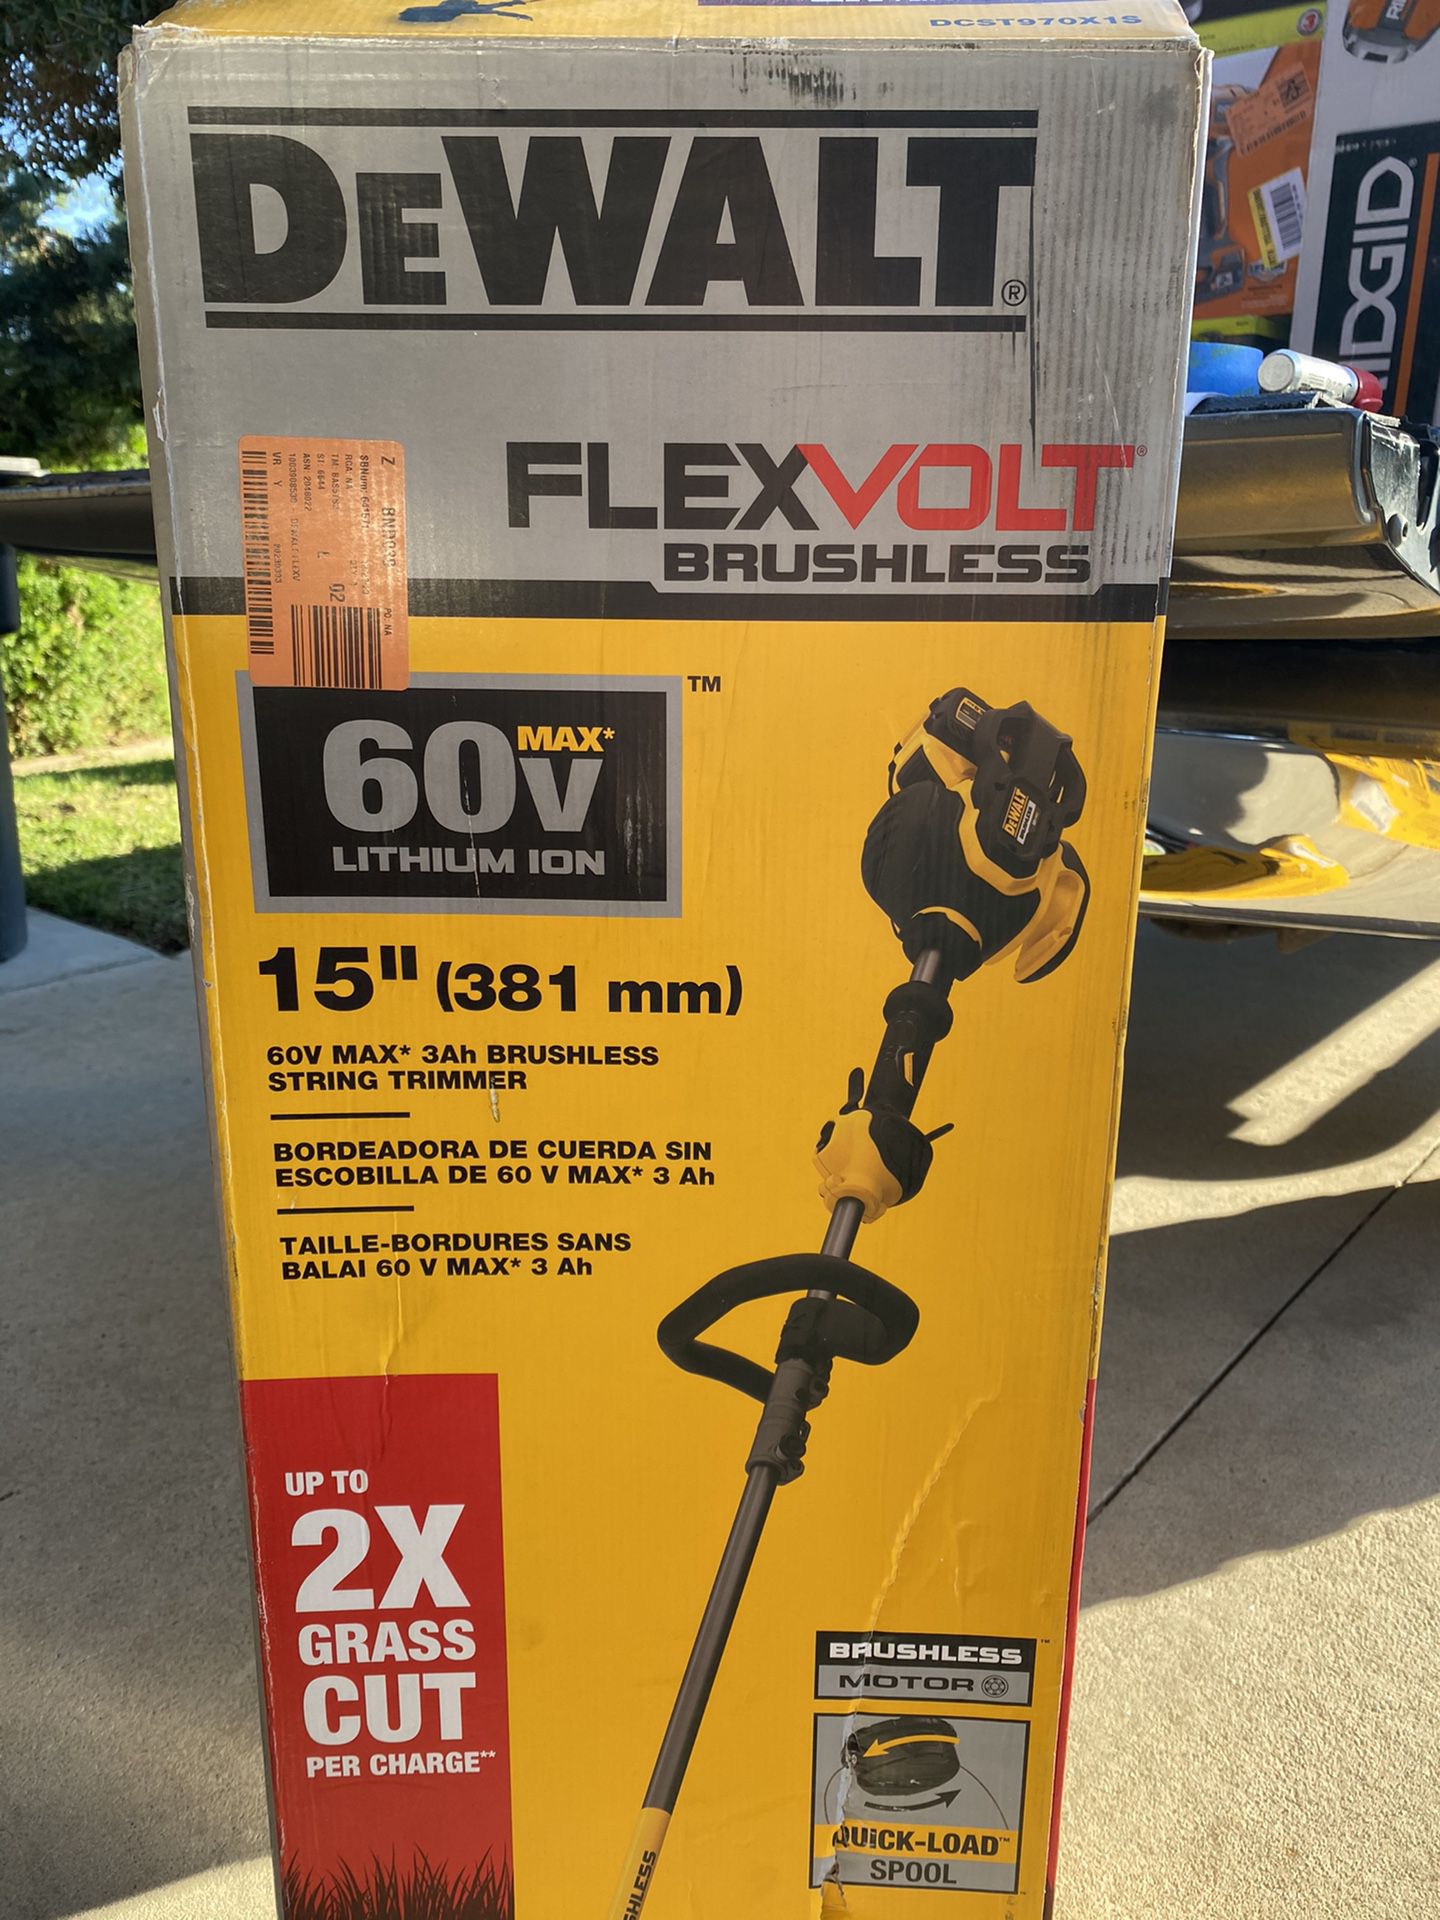 Dewalt 60v Flexvolt 15” String Trimmer ( Tool Only )